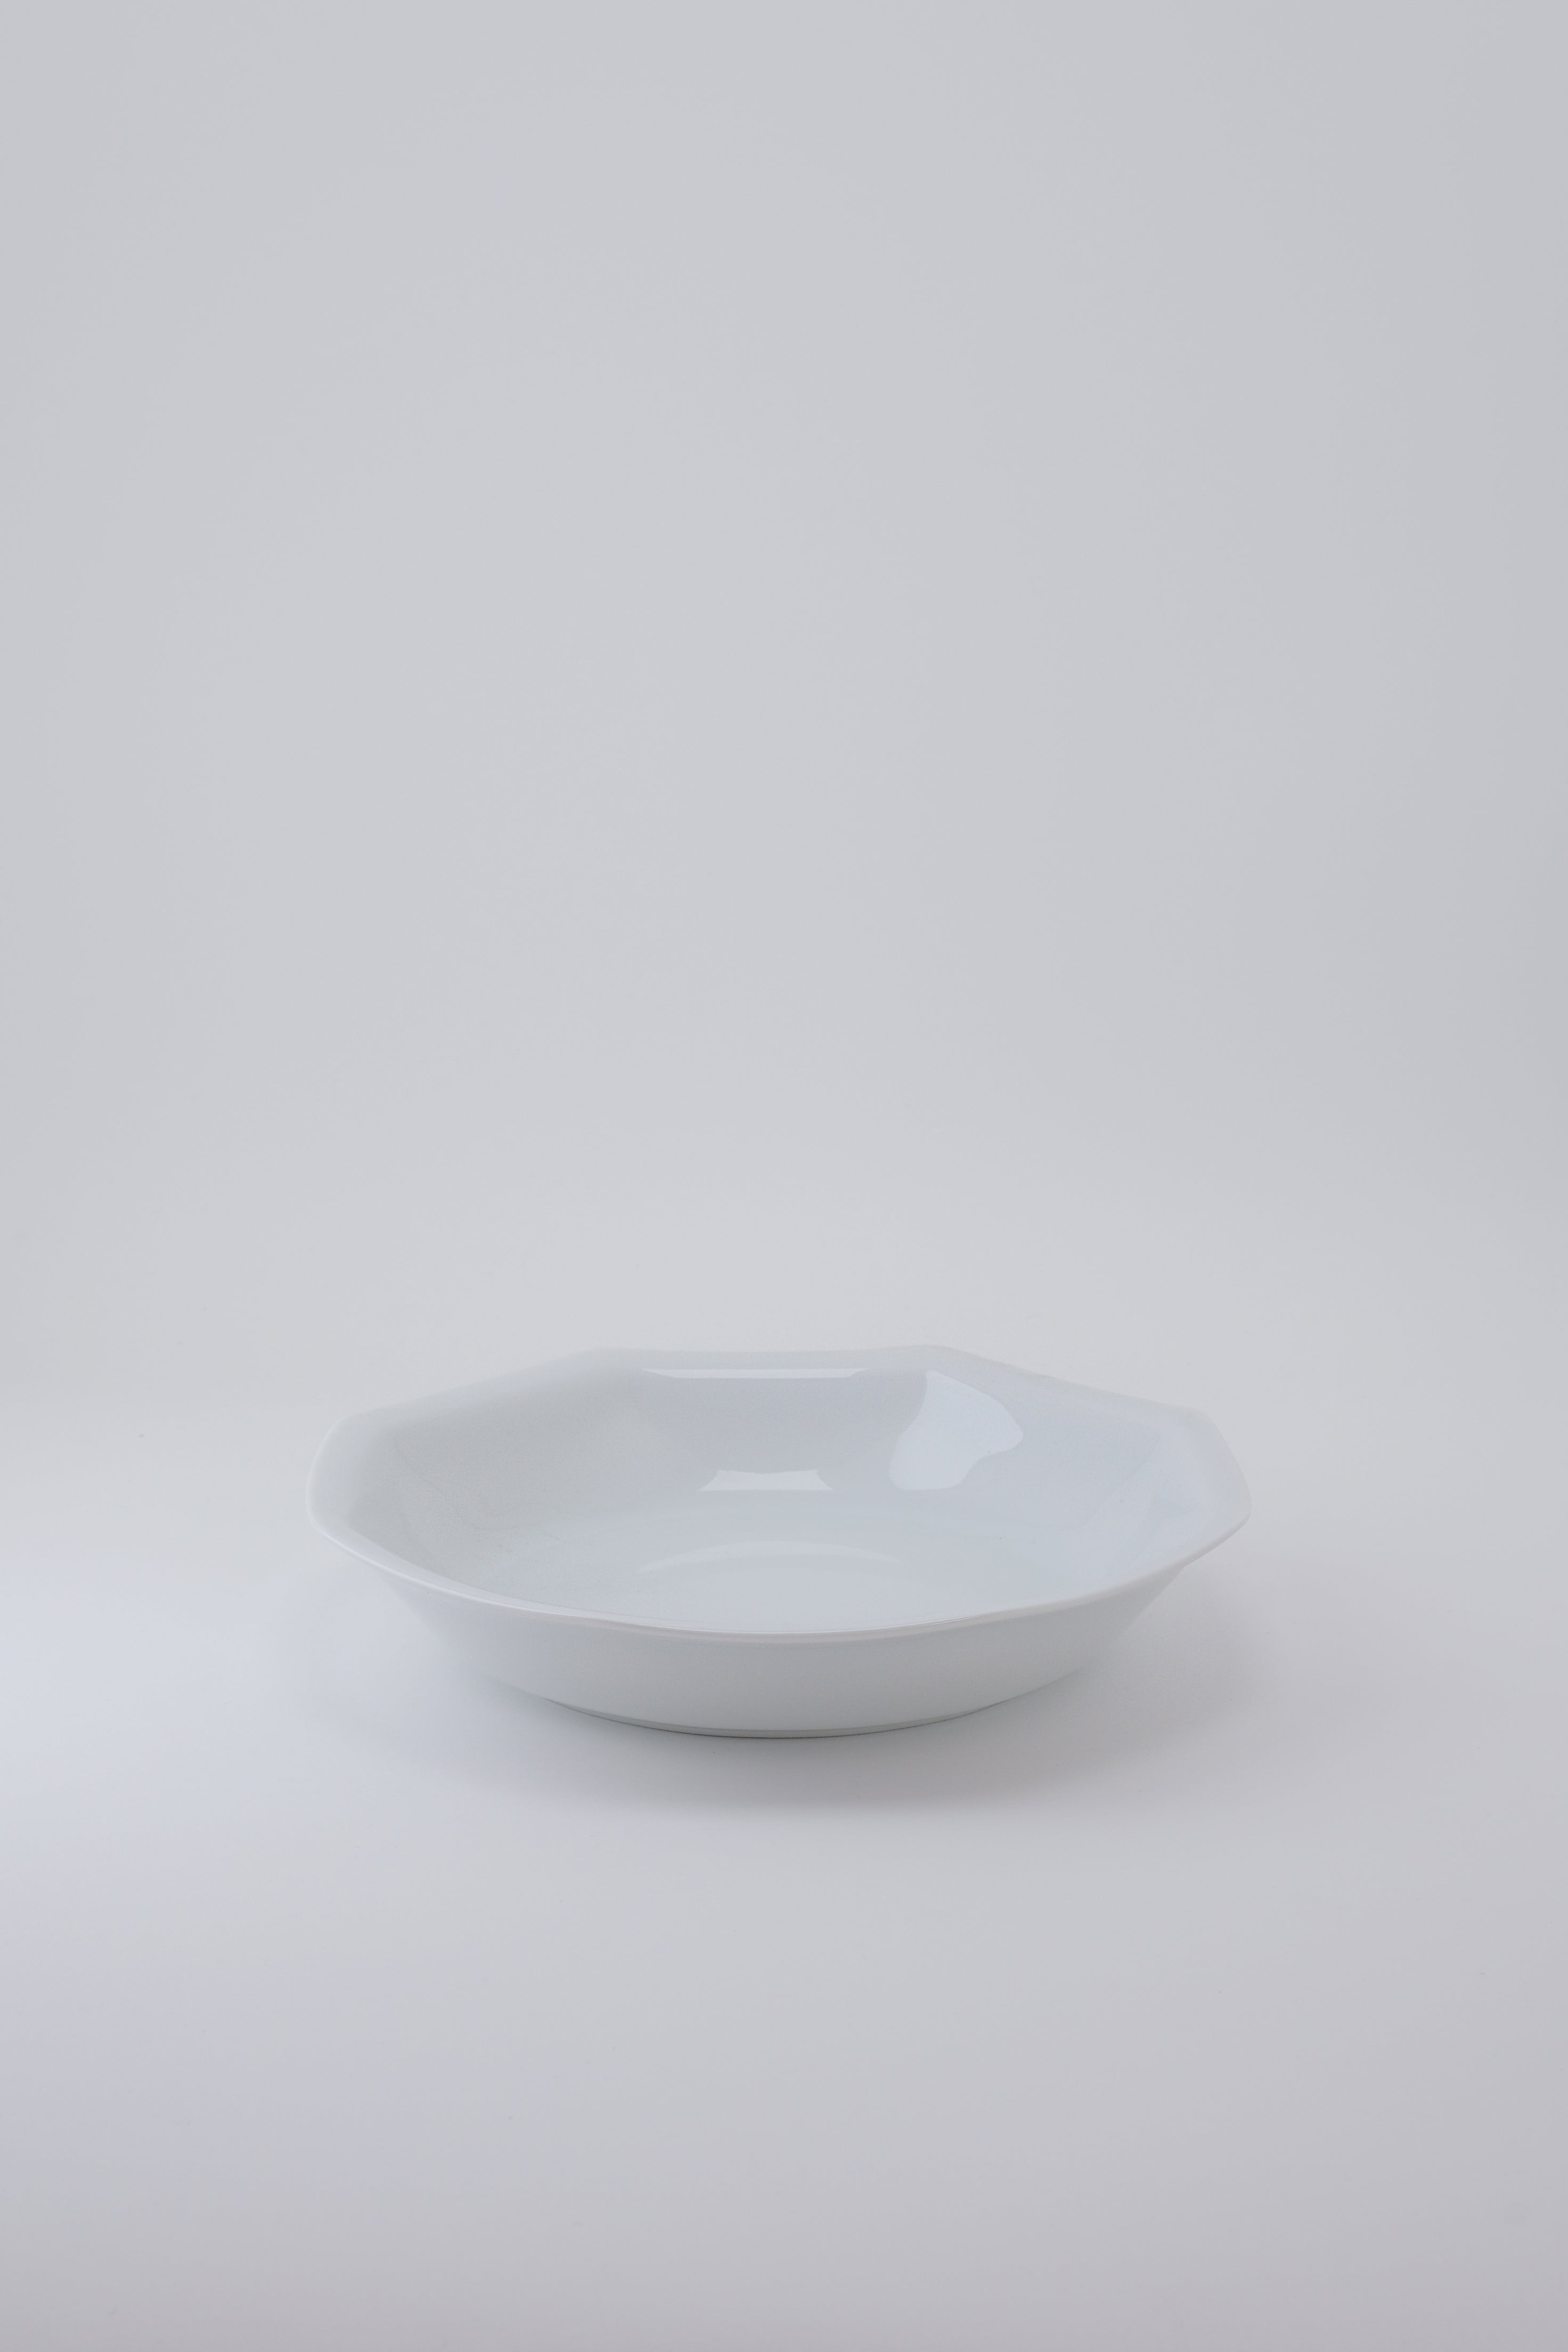 Octangle deep plate white-Ogre-[interior]-[design]-KIOSK48TH